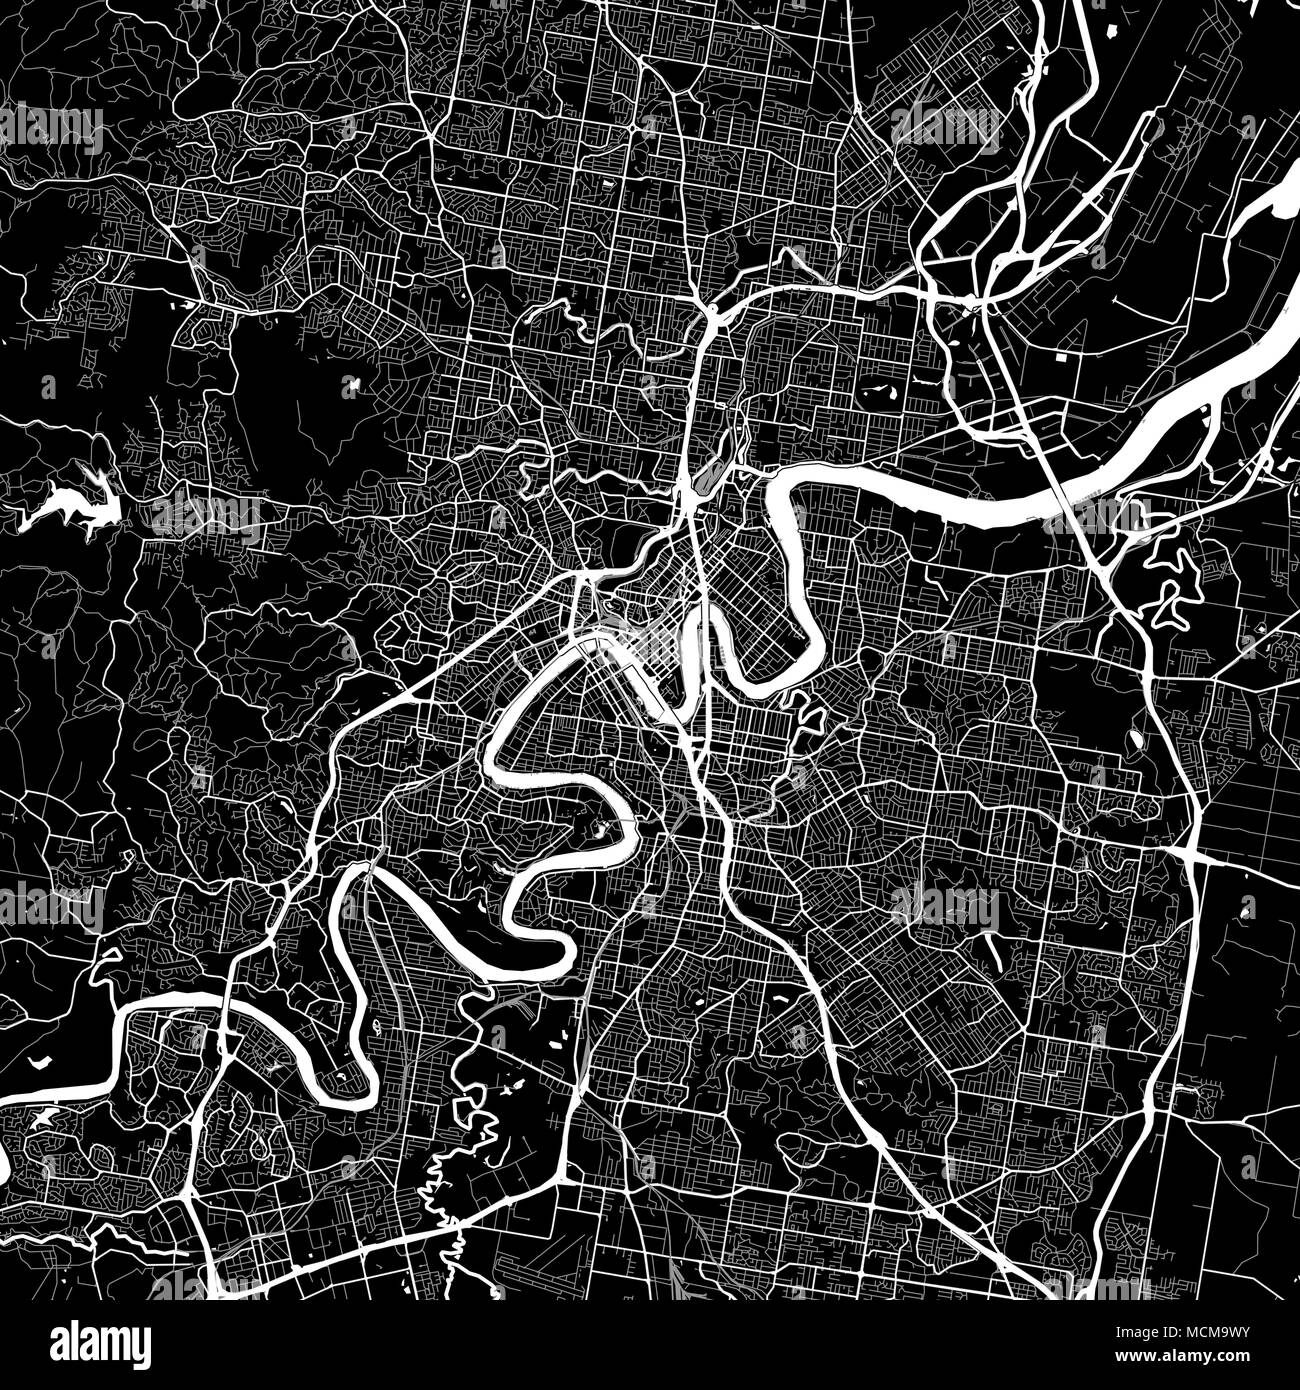 Lageplan von Brisbane, Australien. Der dunkle Hintergrund Version für Infografik und Marketing Projekte. Diese Karte von Brisbane, Queensland, enthält typische La Stock Vektor